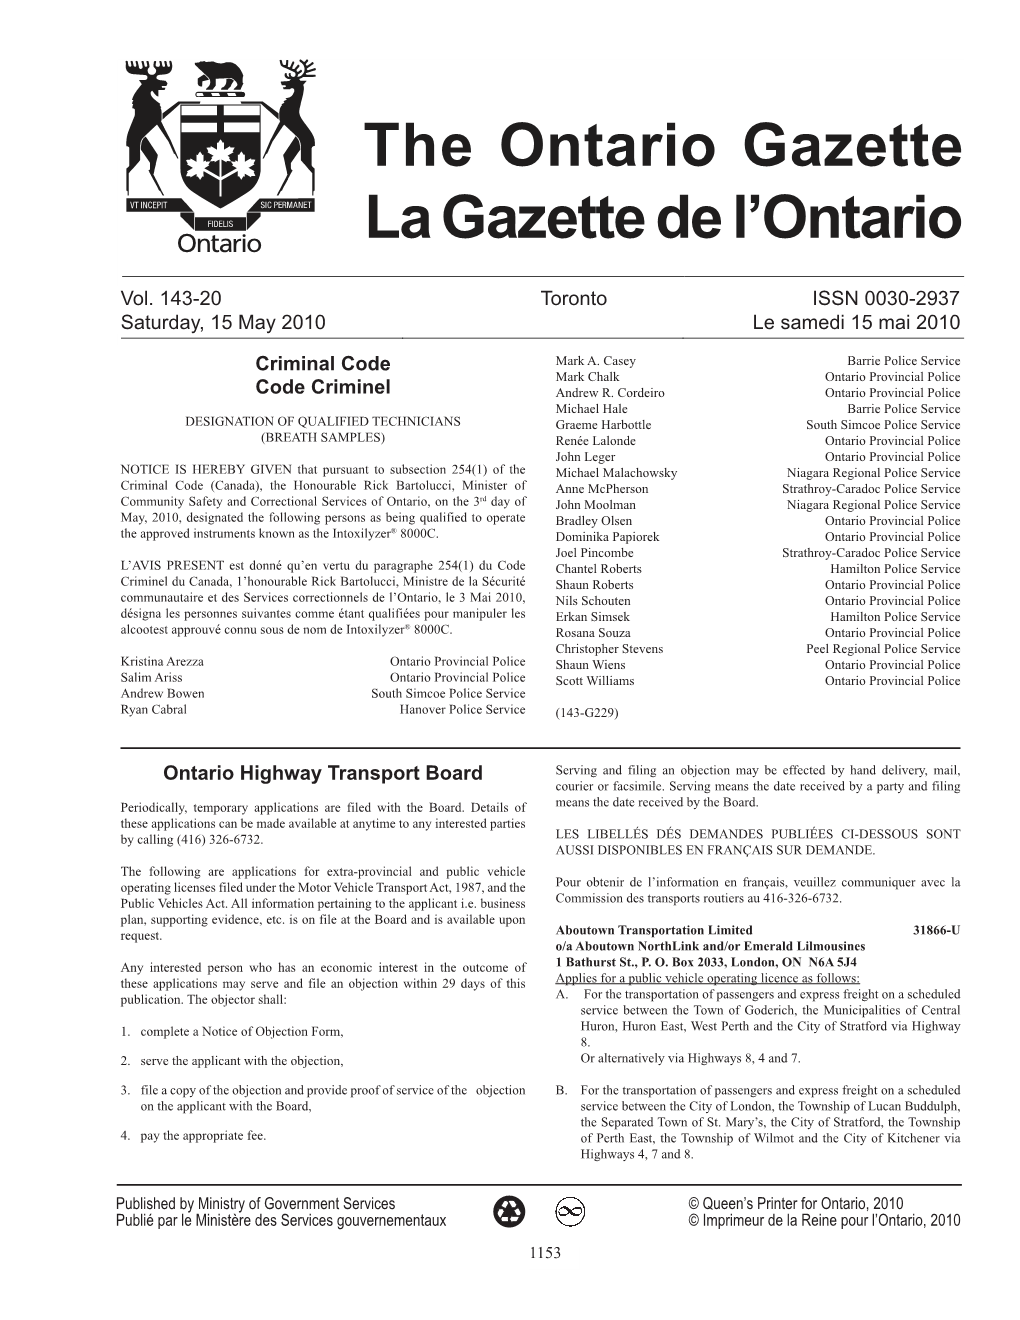 Ontario Gazette Volume 143 Issue 20, La Gazette De L'ontario Volume 143